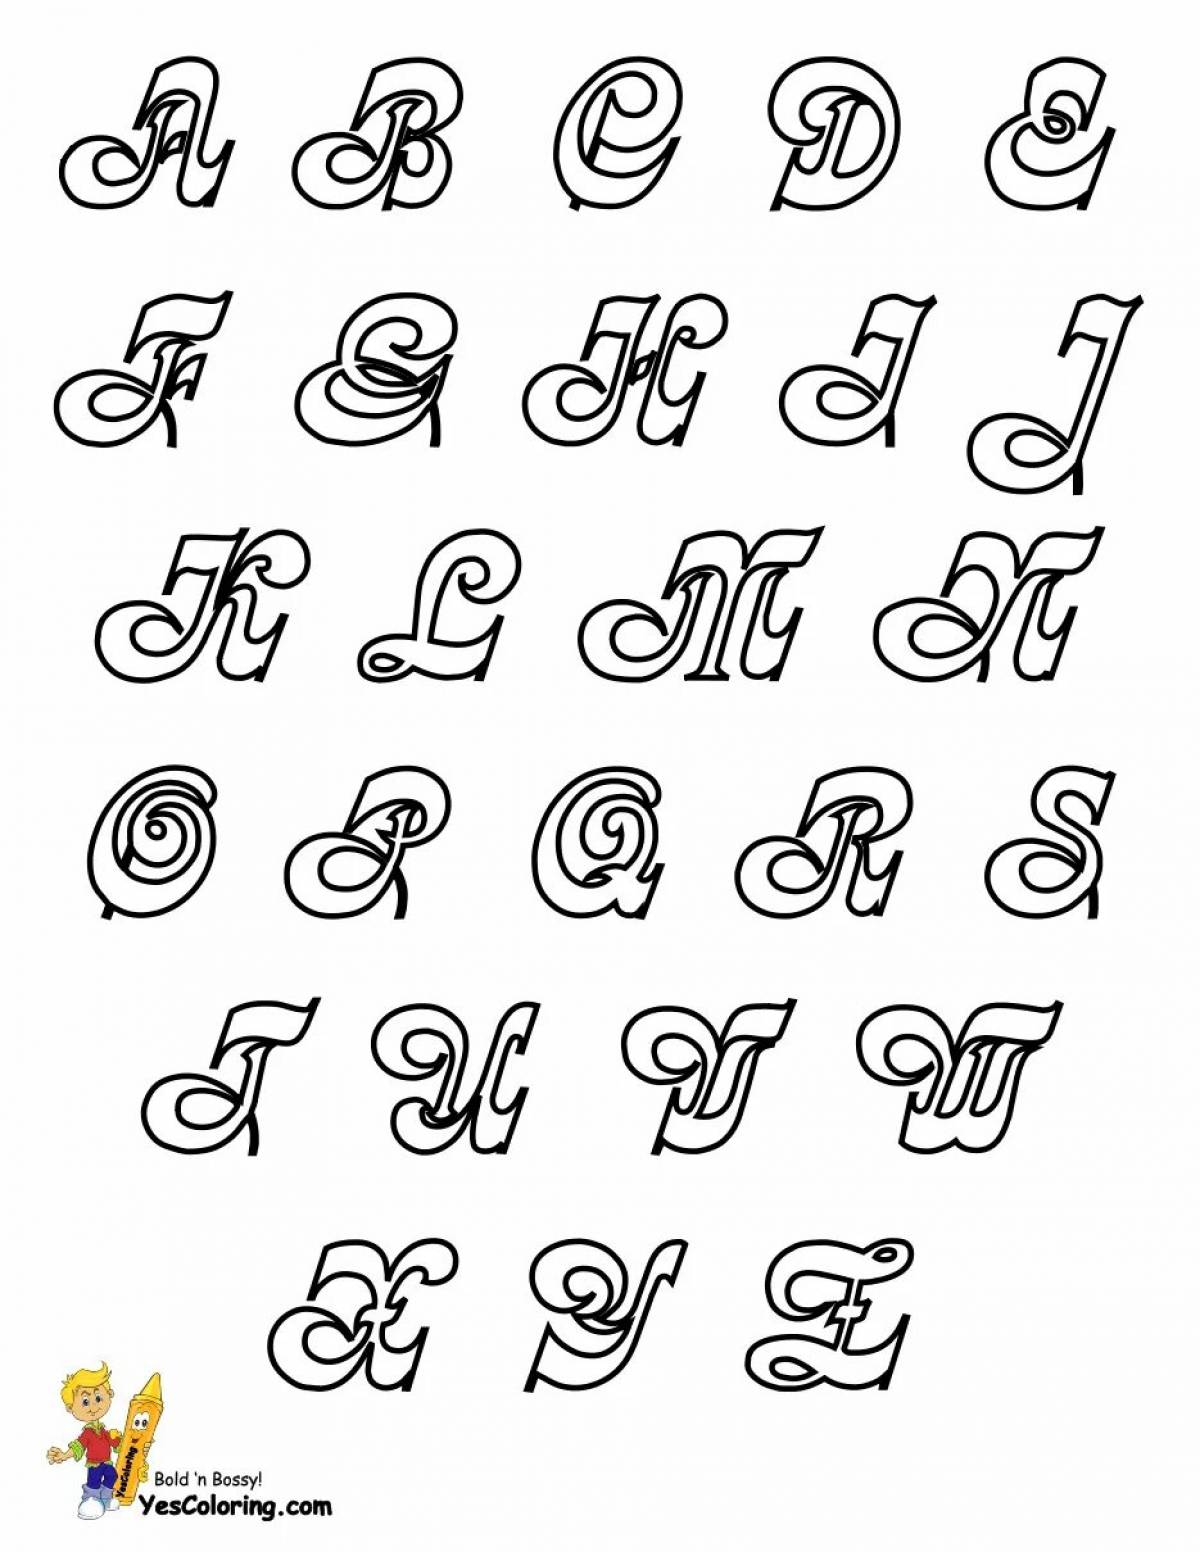 Как красиво написать букву печатную. Красивые буквы алфавита. Красивые буквы для плаката. Красивый шрифт. Русский алфавит красивыми буквами.